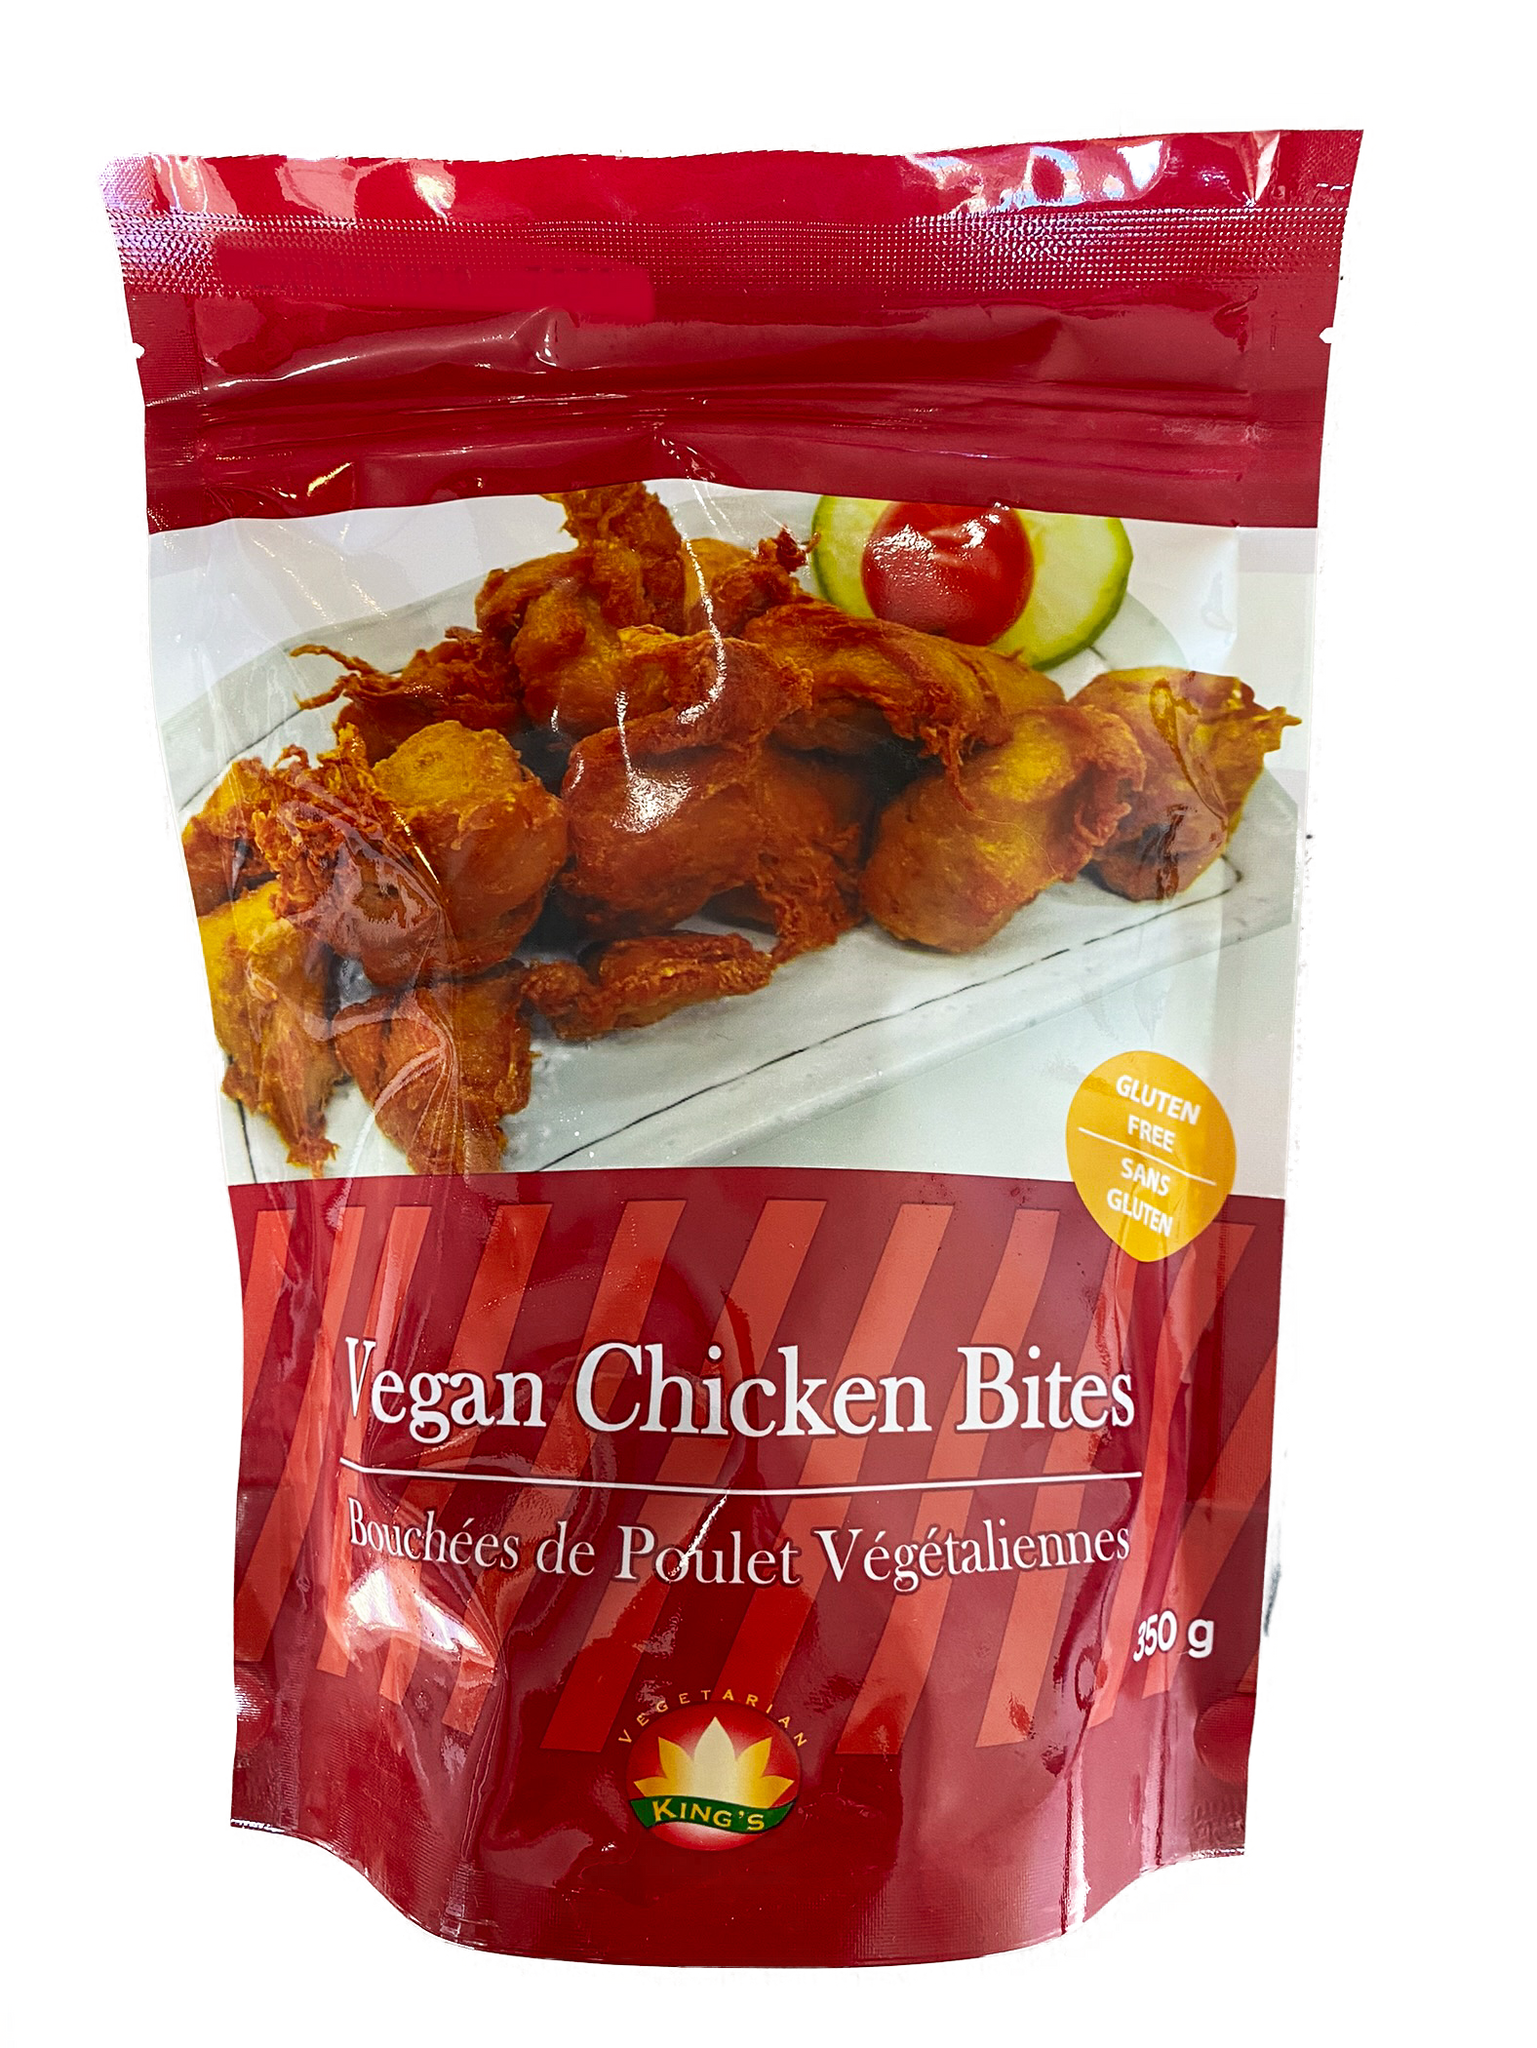 King's Vegan Gluten Free Chicken Bites